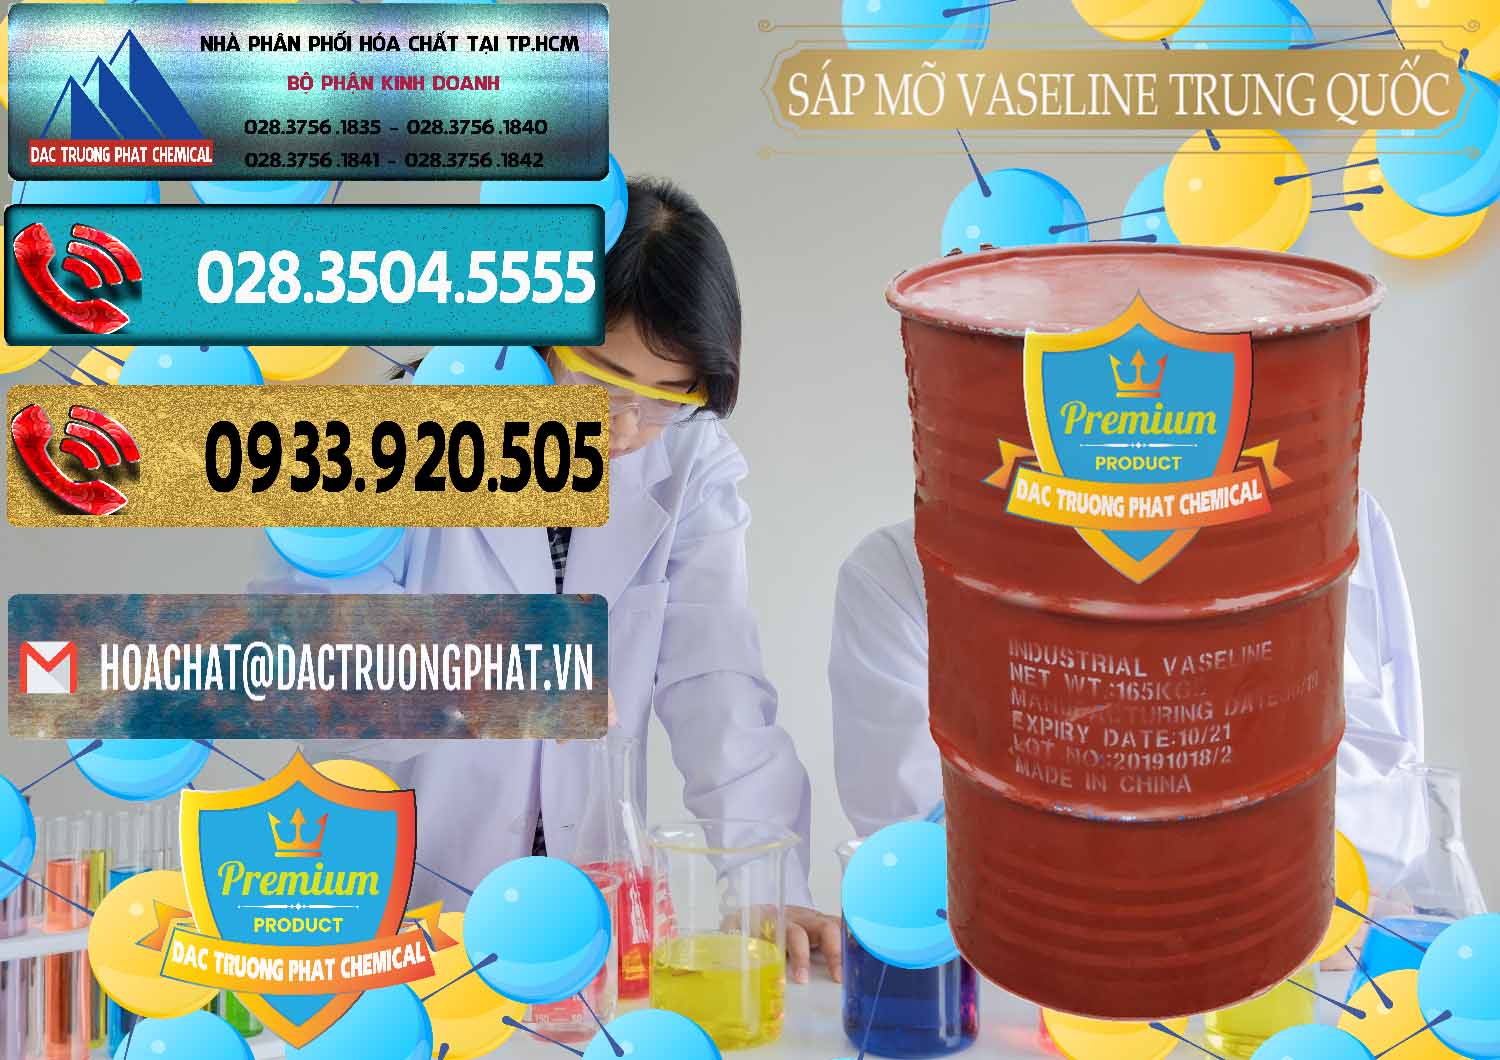 Cty chuyên bán và cung ứng Sáp Mỡ Vaseline Trung Quốc China - 0122 - Kinh doanh ( phân phối ) hóa chất tại TP.HCM - hoachatdetnhuom.com